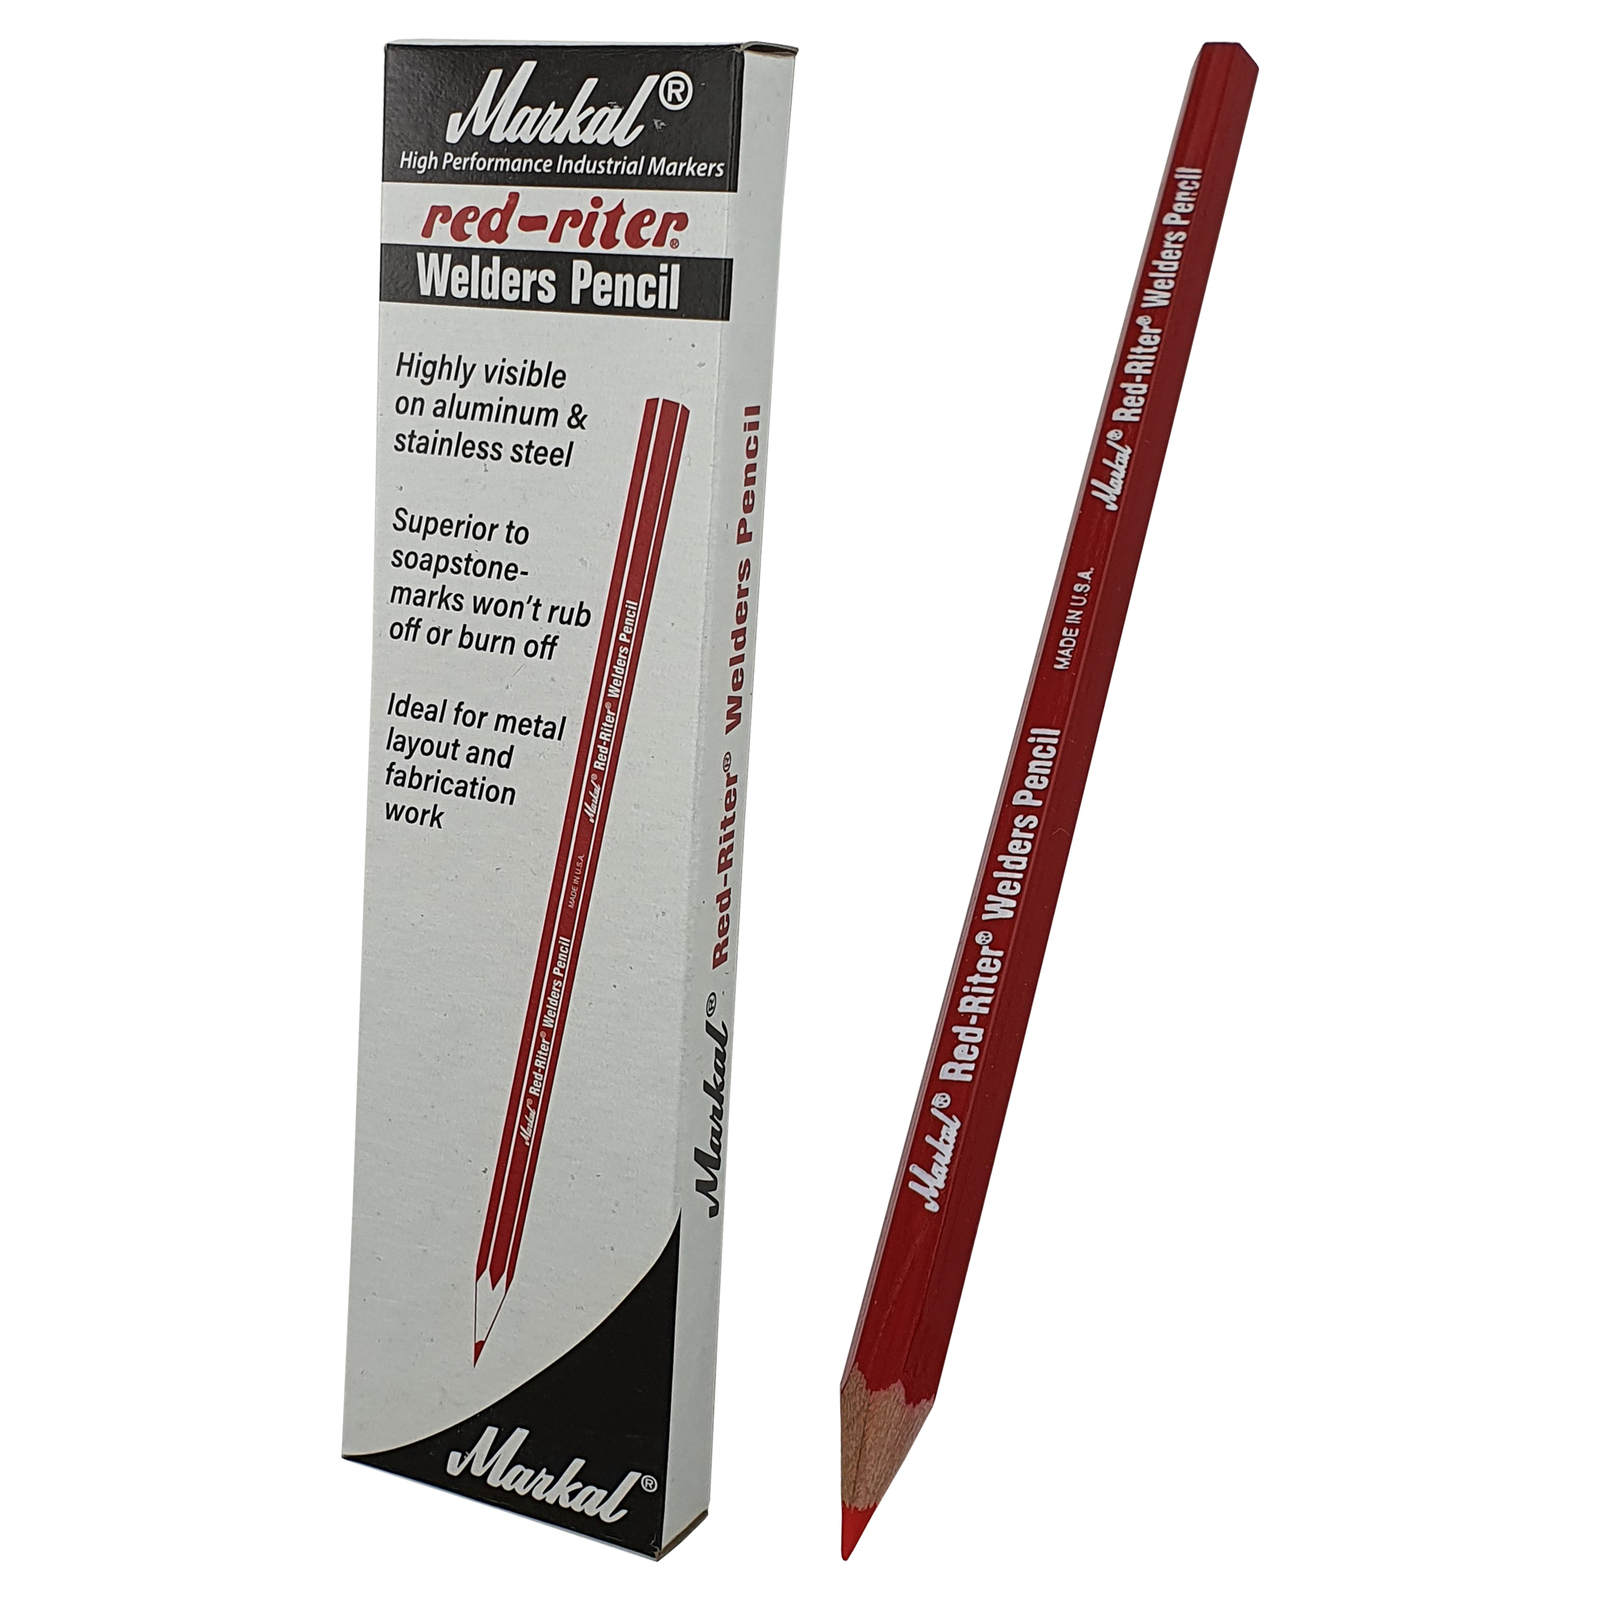 Metallic Silver Welders Marking Pencils, 12 pack